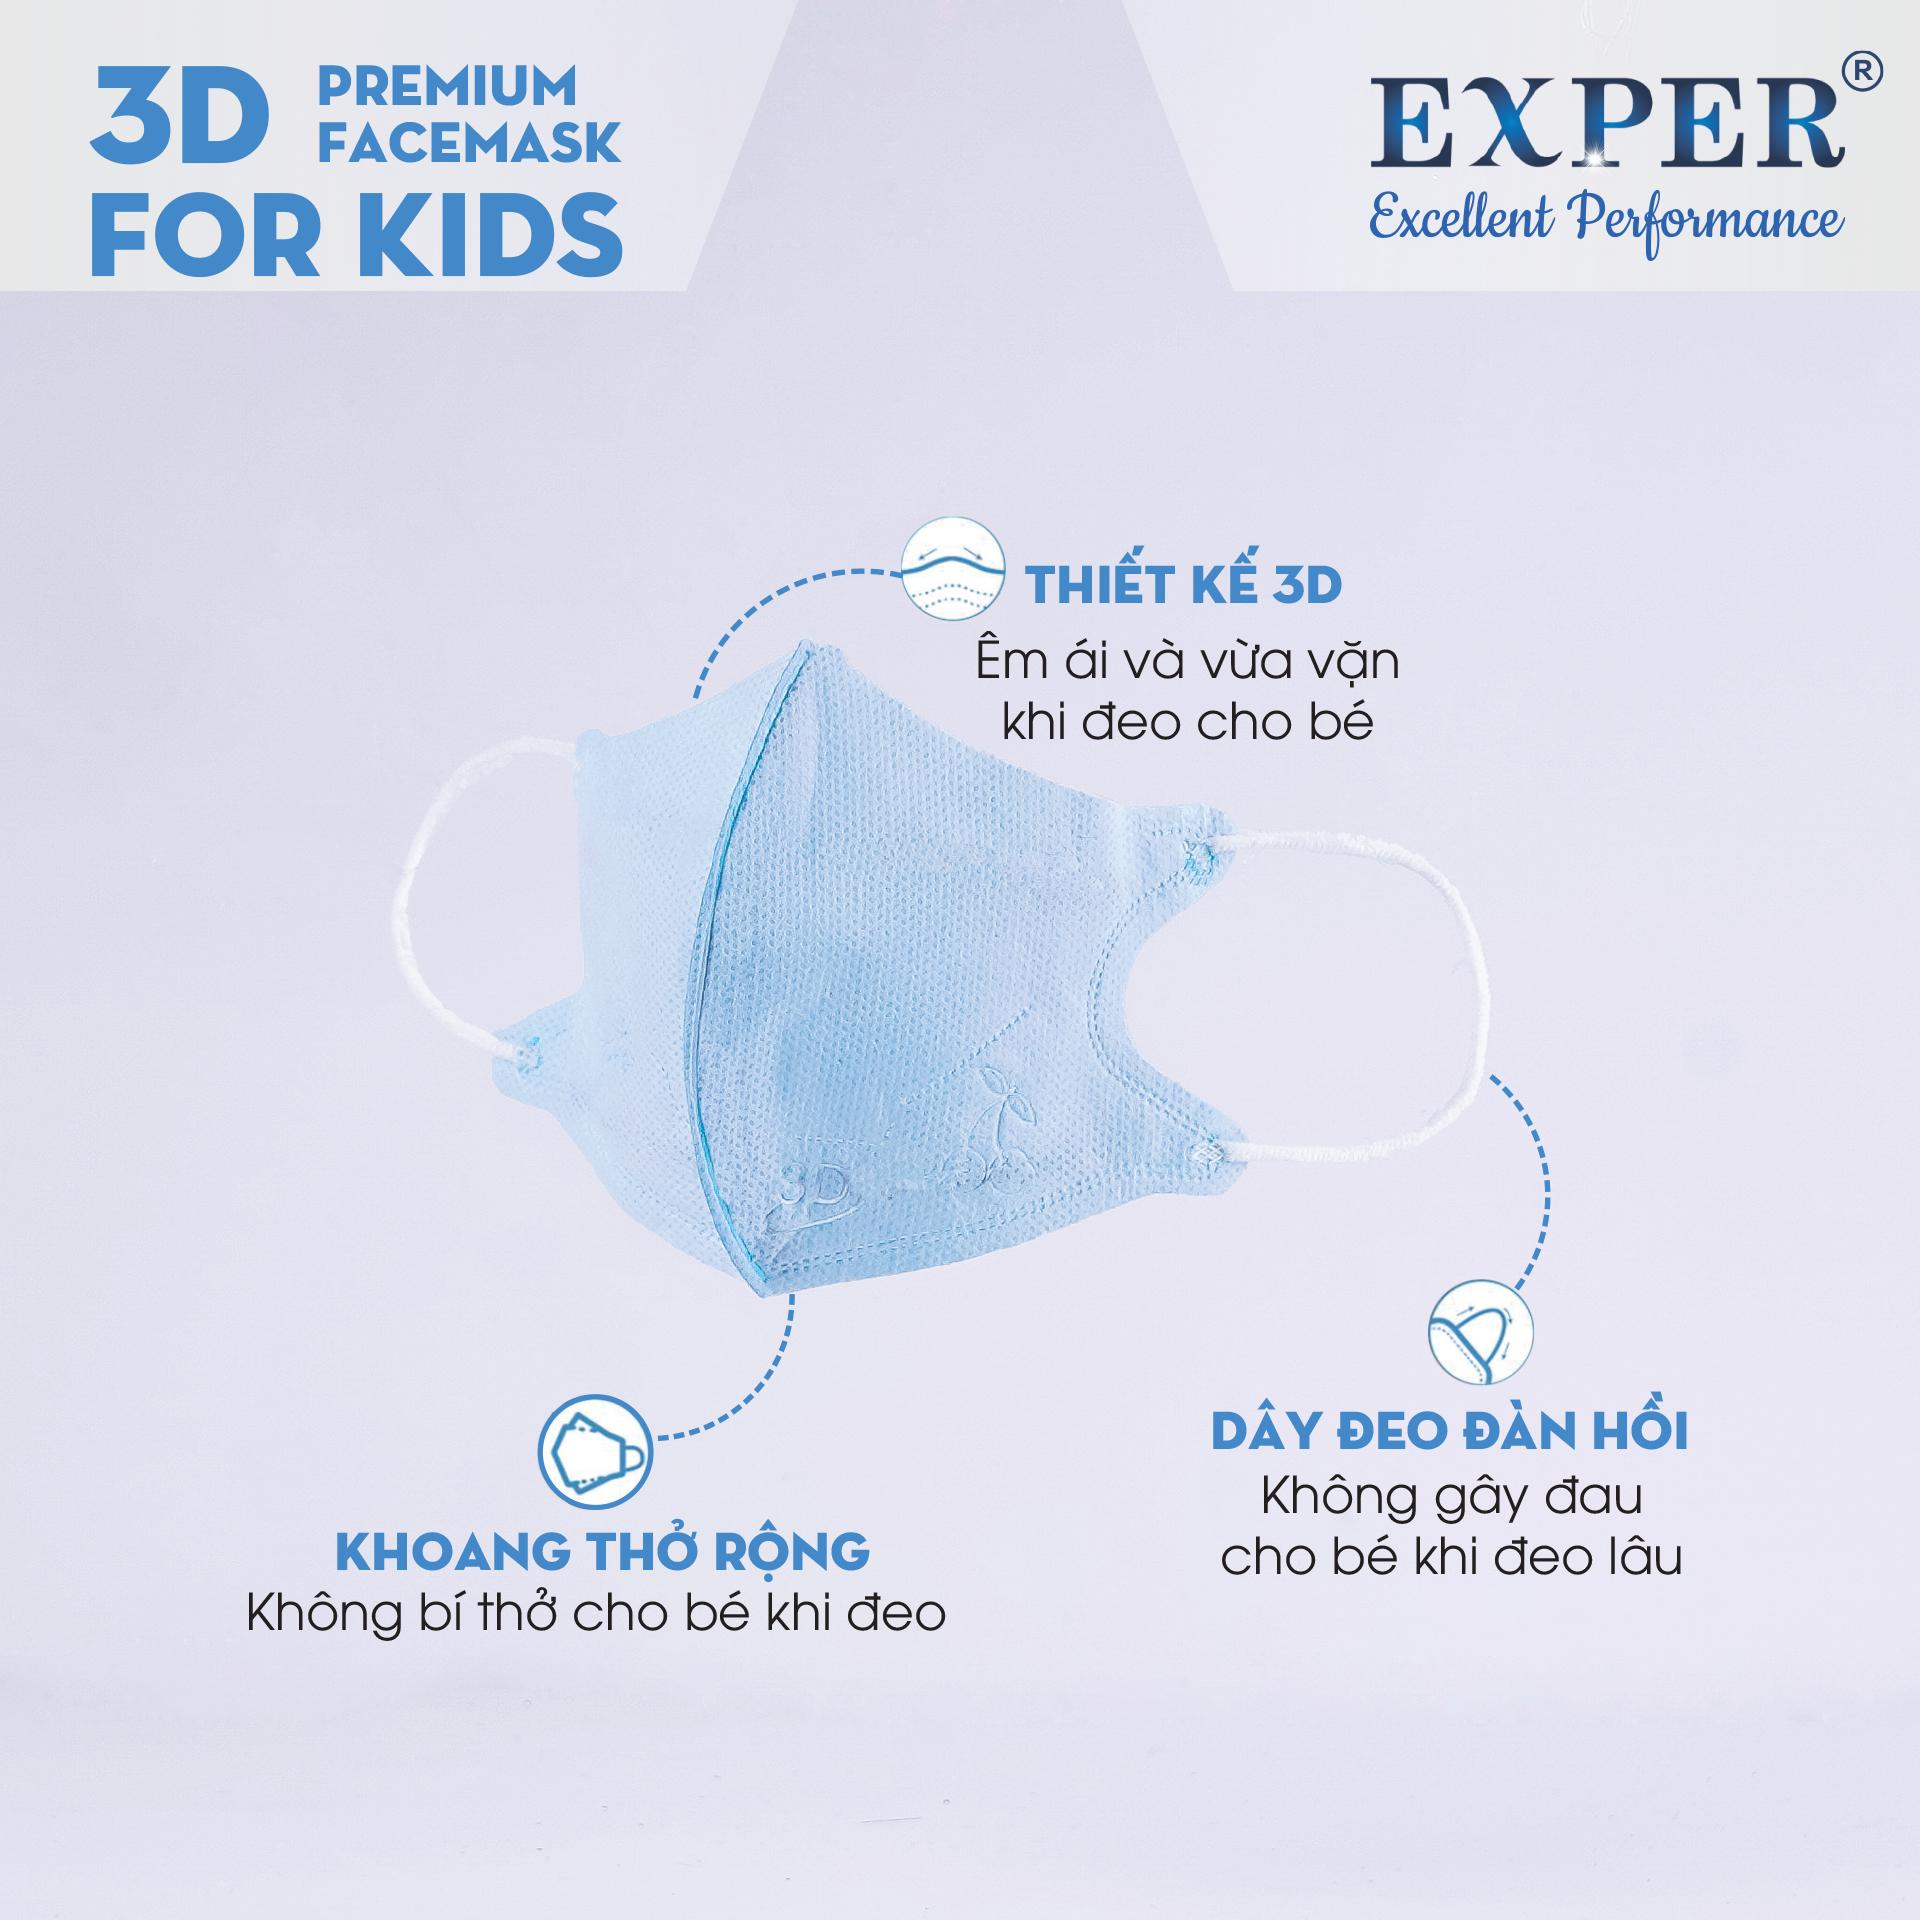 Combo 3 bịch khẩu trang 3D em bé Exper kháng khuẩn cho bé dưới 5 tuổi. Sản phẩm cao cấp bảo vệ đường hô hấp và an toàn cho bé. Khẩu trang y tế 4 lớp kháng khuẩn, mỗi bịch 10 cái